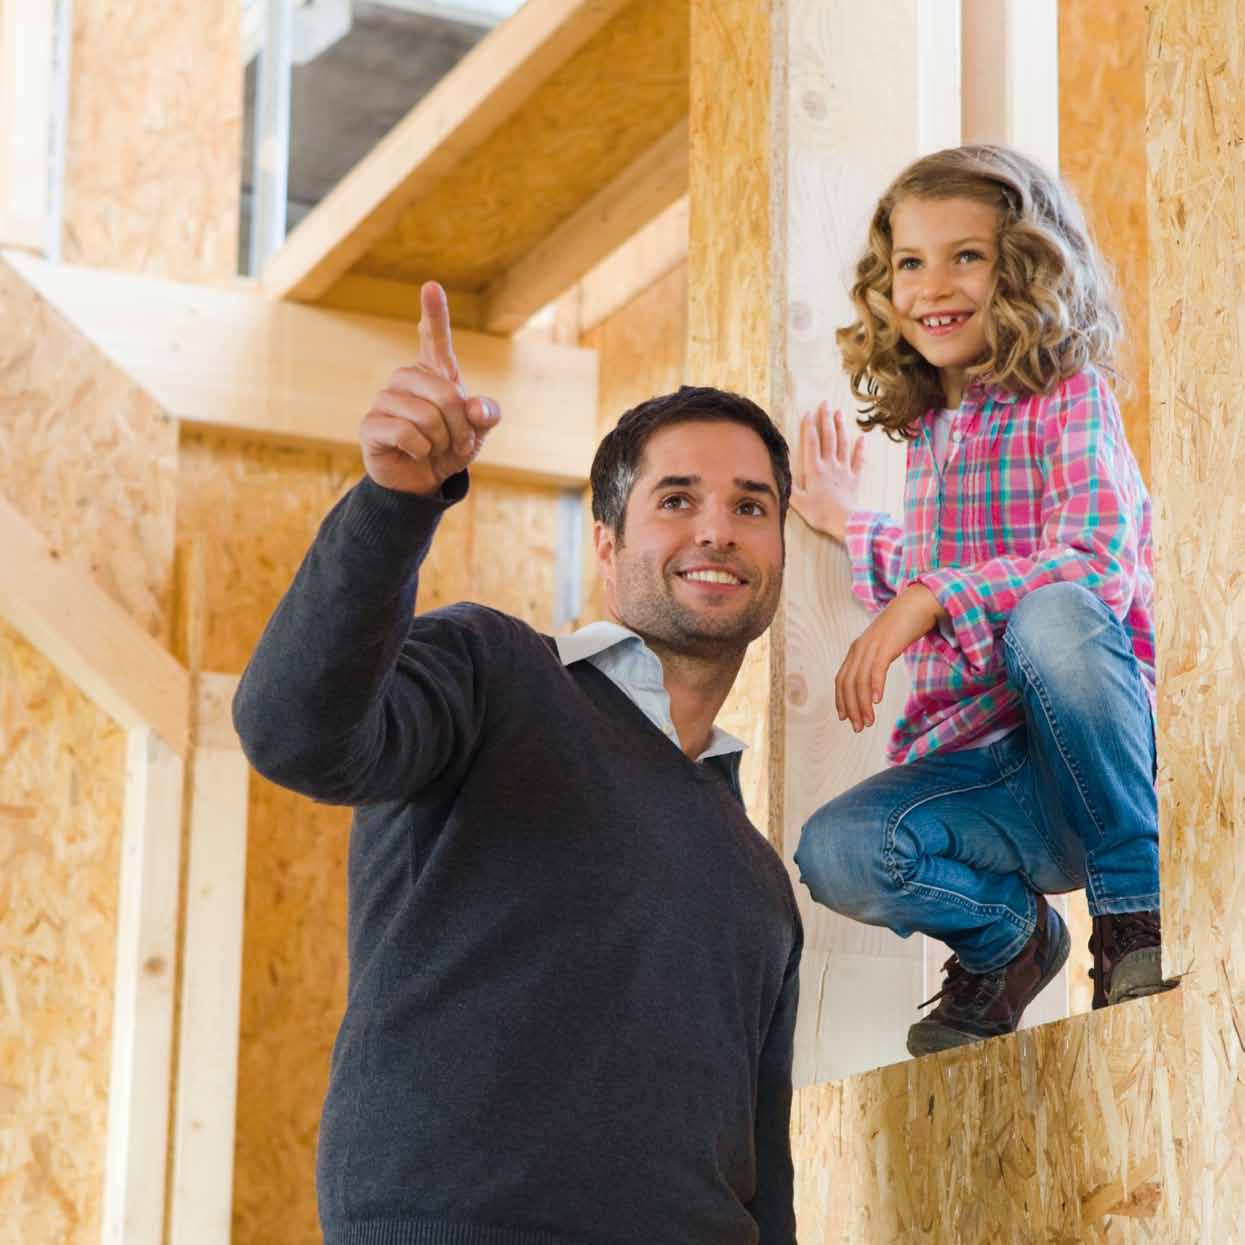 Familie Albrecht sucht die perfekte Dämmlösung für ihr Haus in Holzrahmenbauweise.